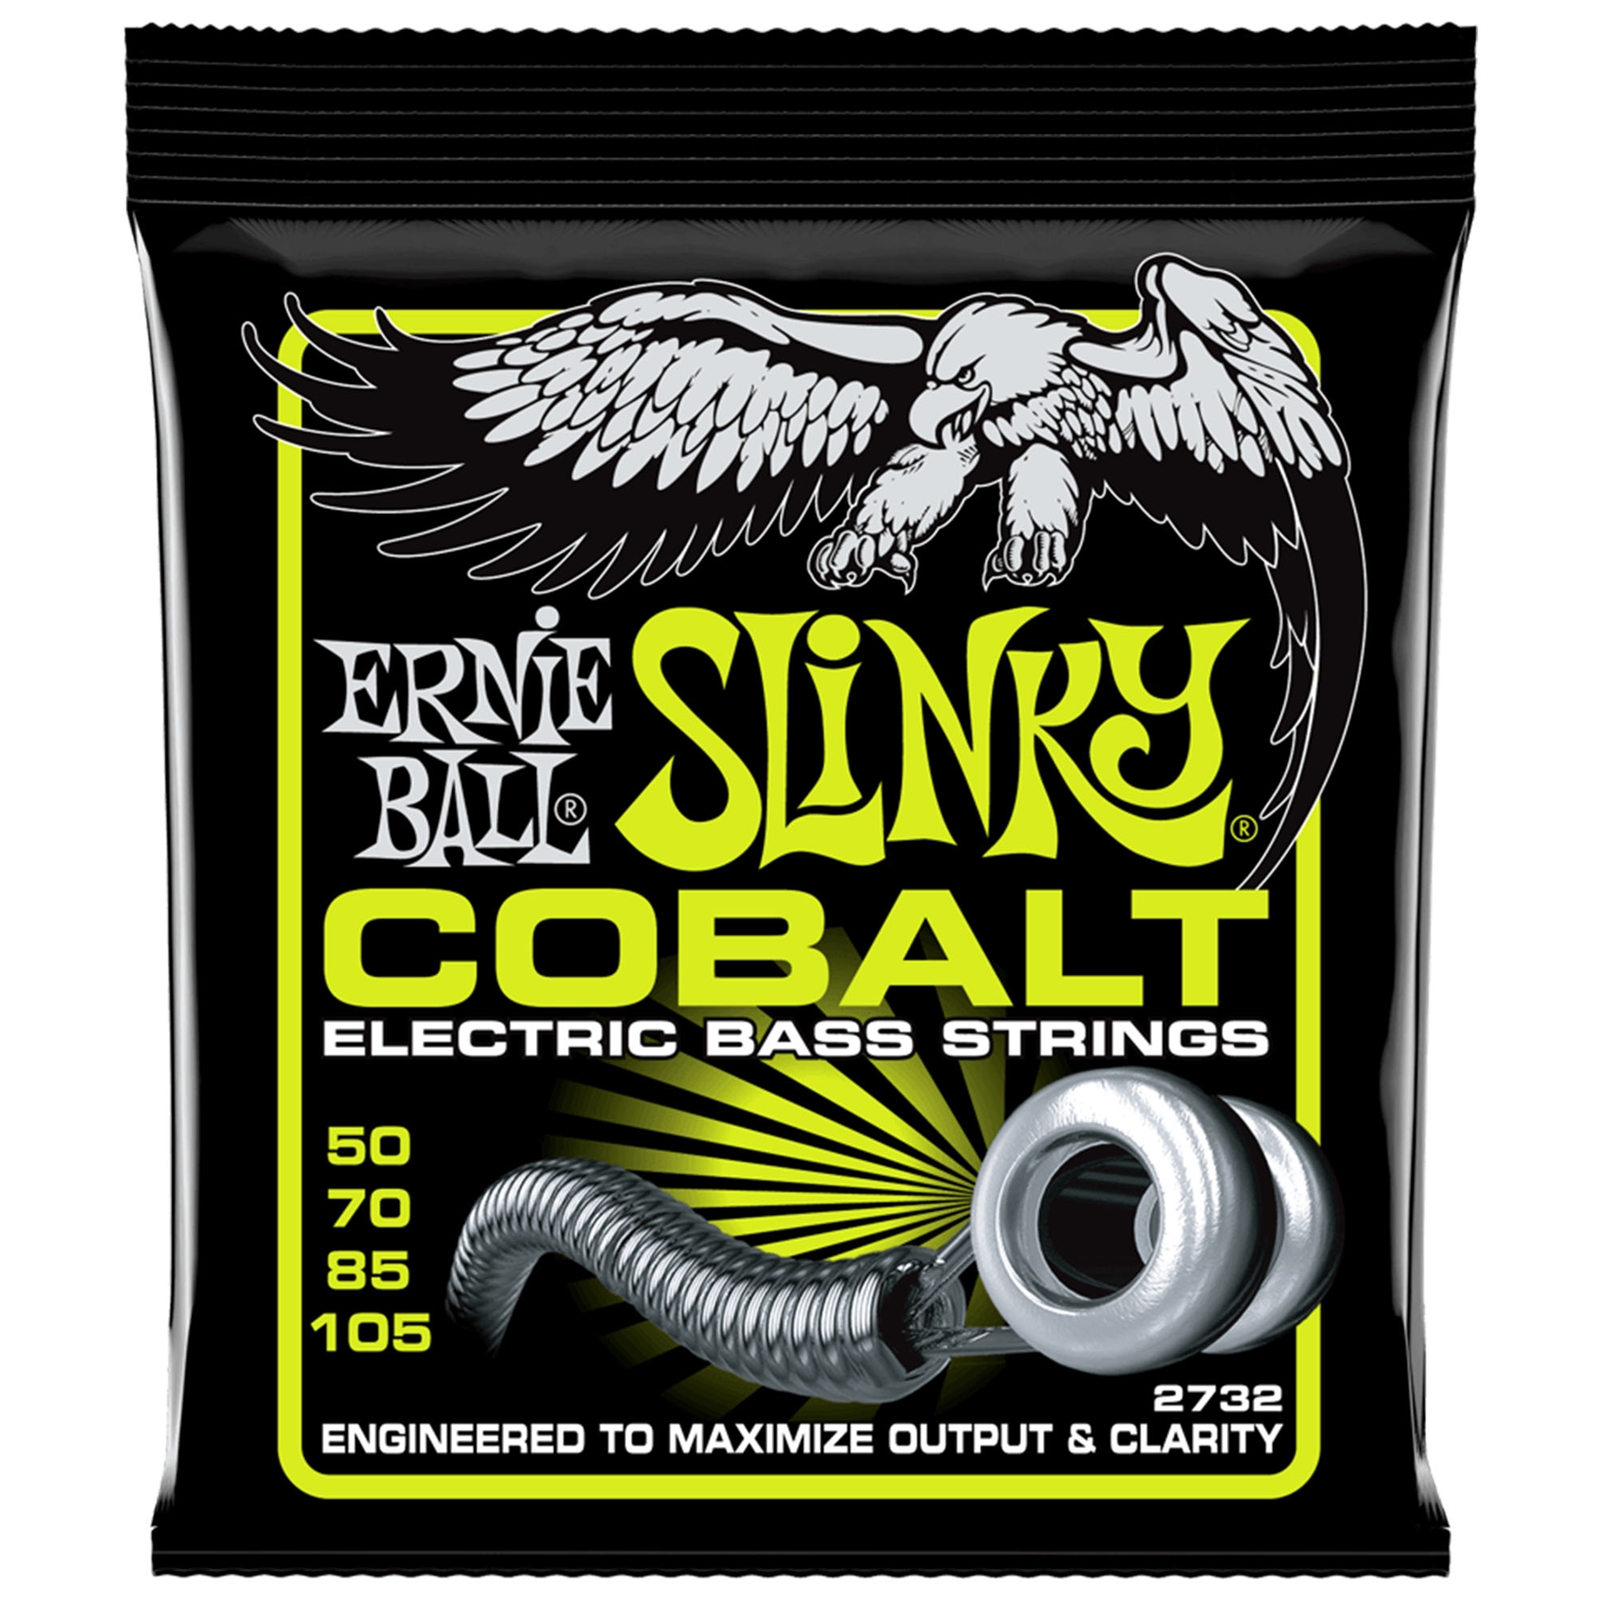 Ernie Ball Regular Slinky Cobalt Electric Bass Strings 50-105 Gauge